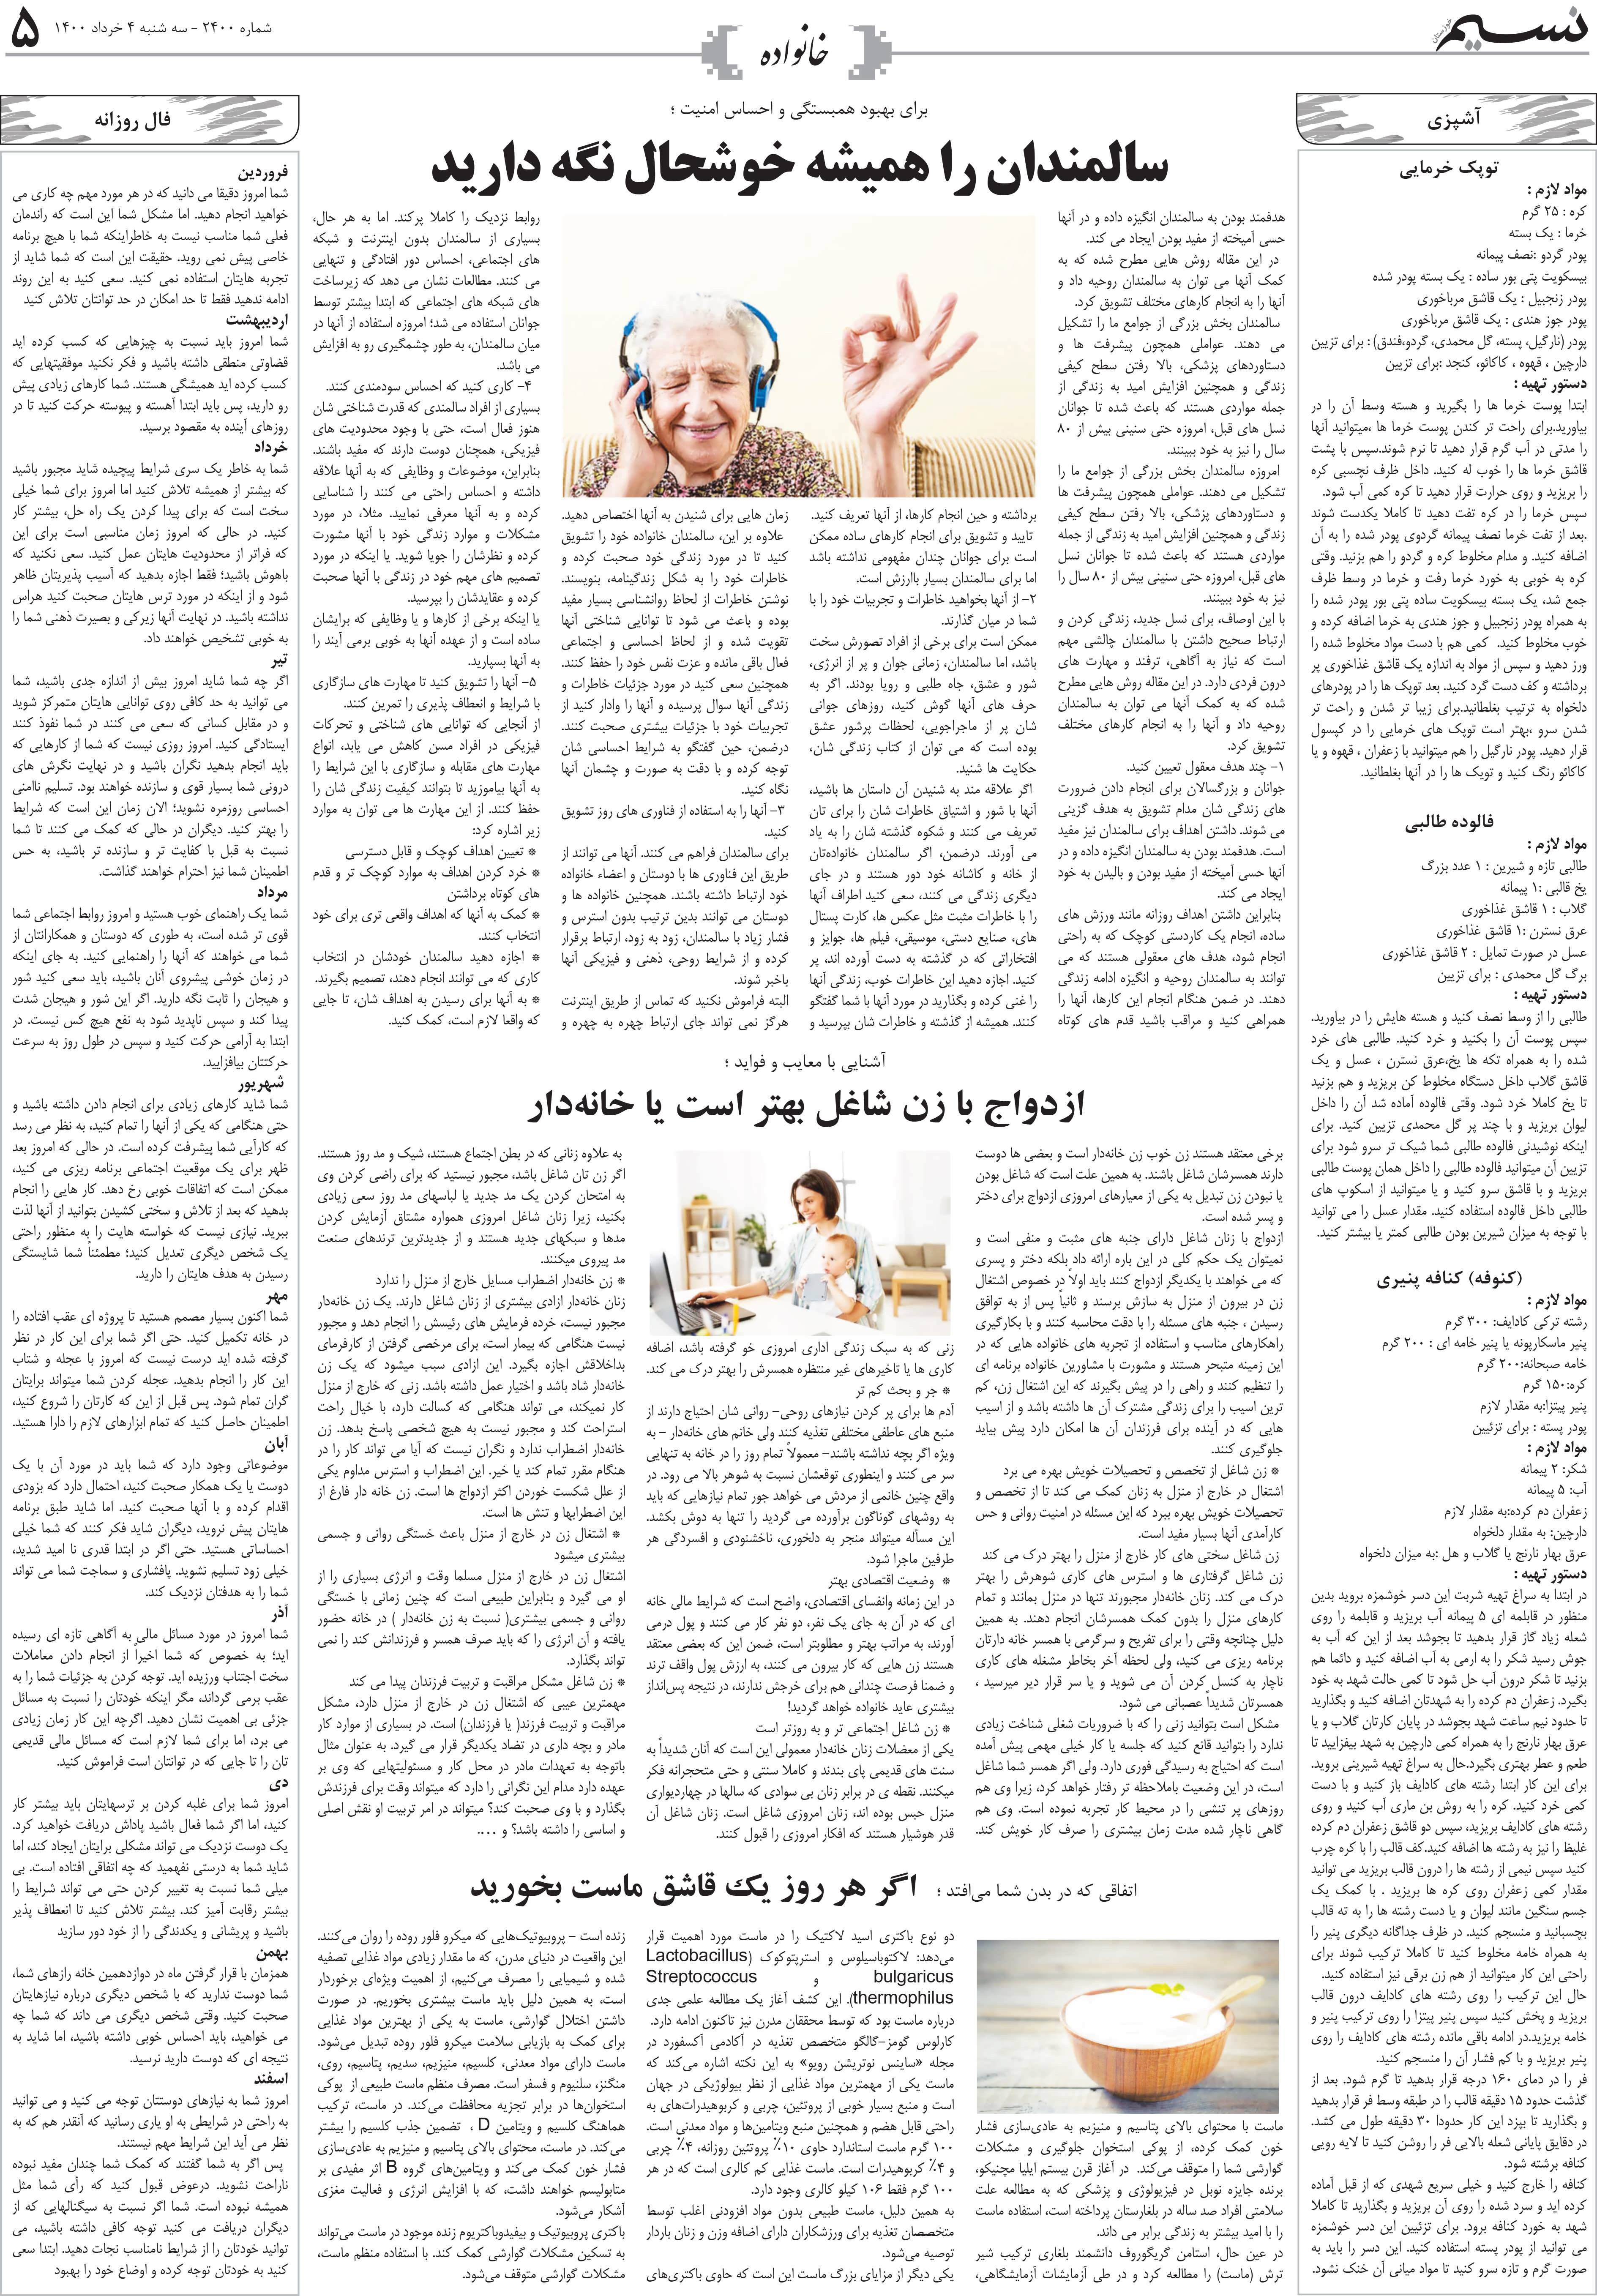 صفحه خانواده روزنامه نسیم شماره 2400